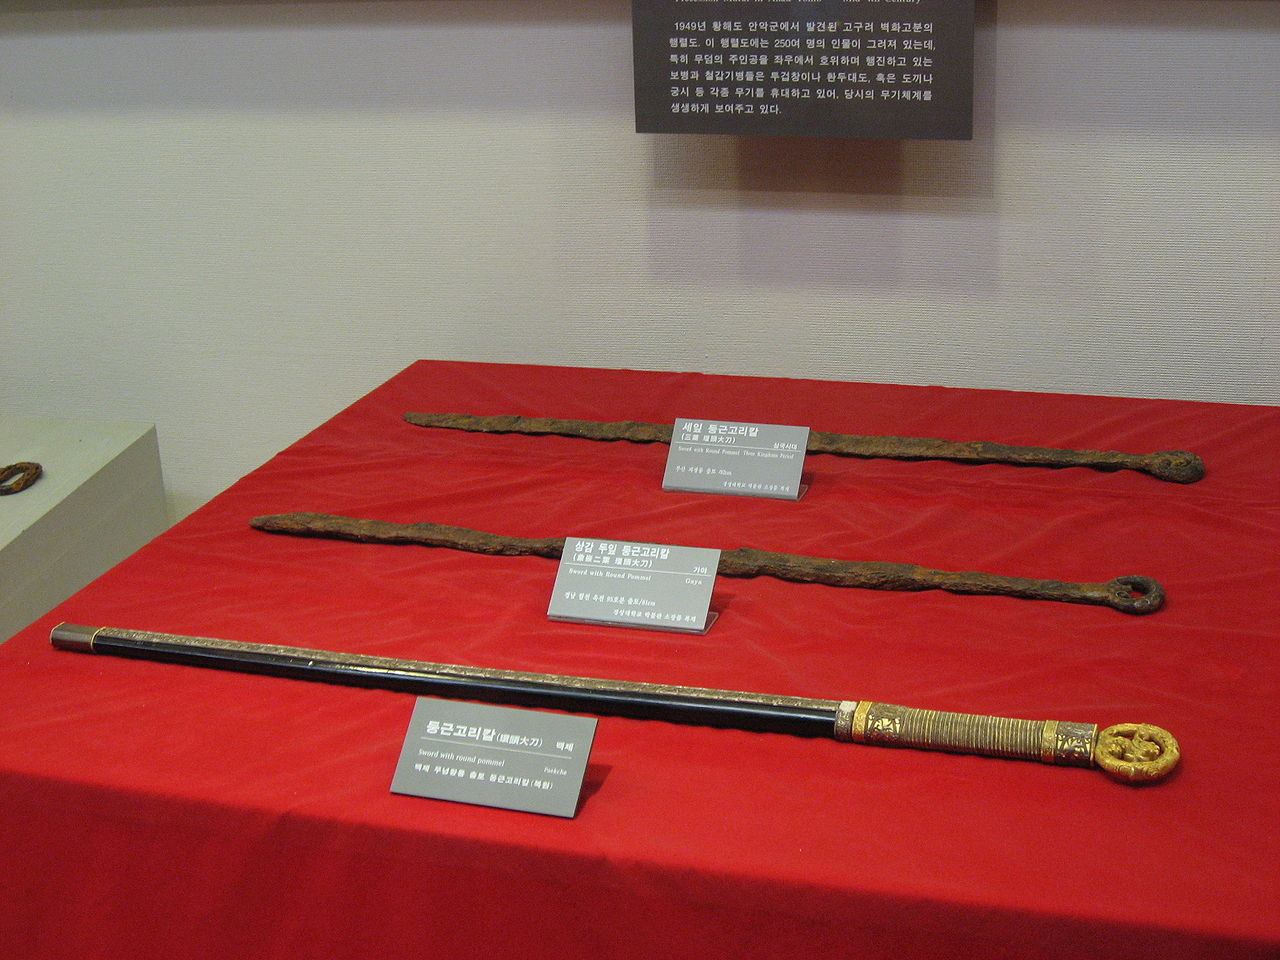 Épées coréennes produites pendant la période des Trois Royaumes